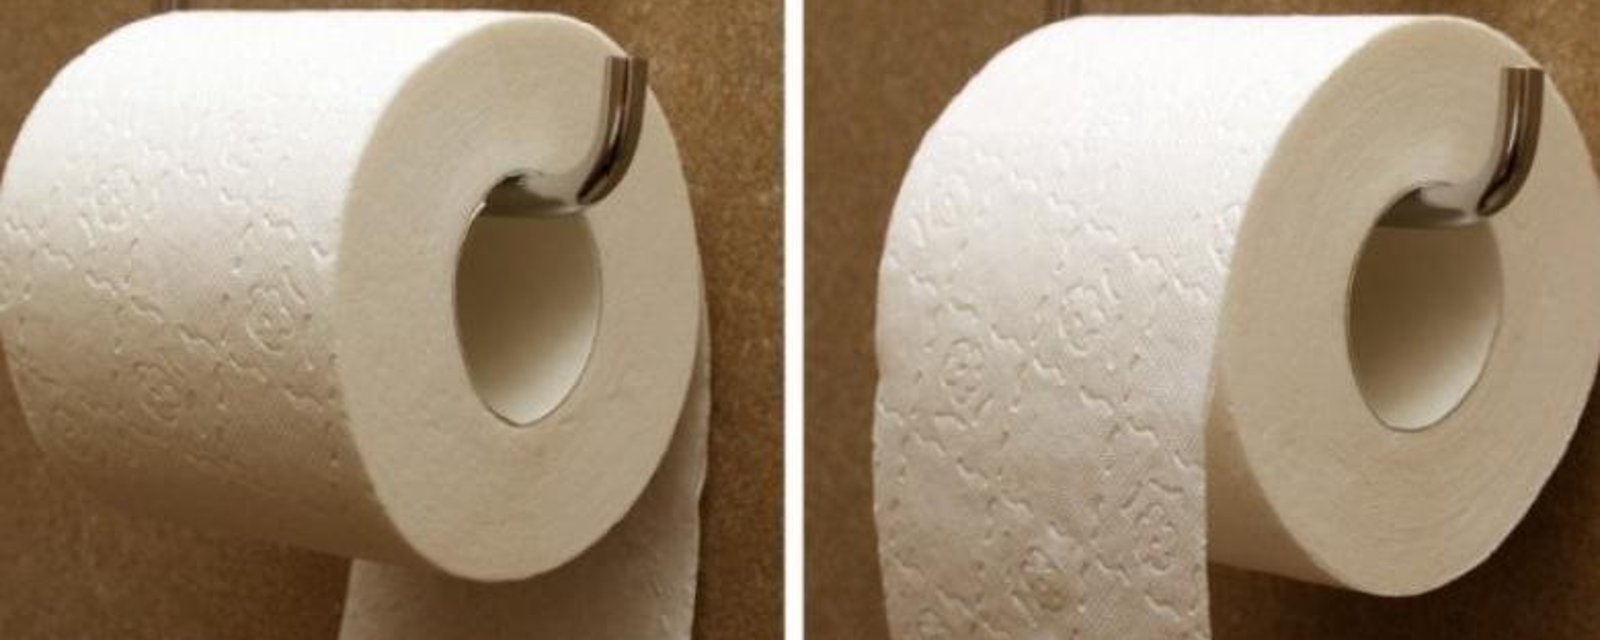 Un brevet vieux de 125 ans confirme la bonne manière d'accrocher le papier de toilette! 50% des gens ne le font pas correctement!